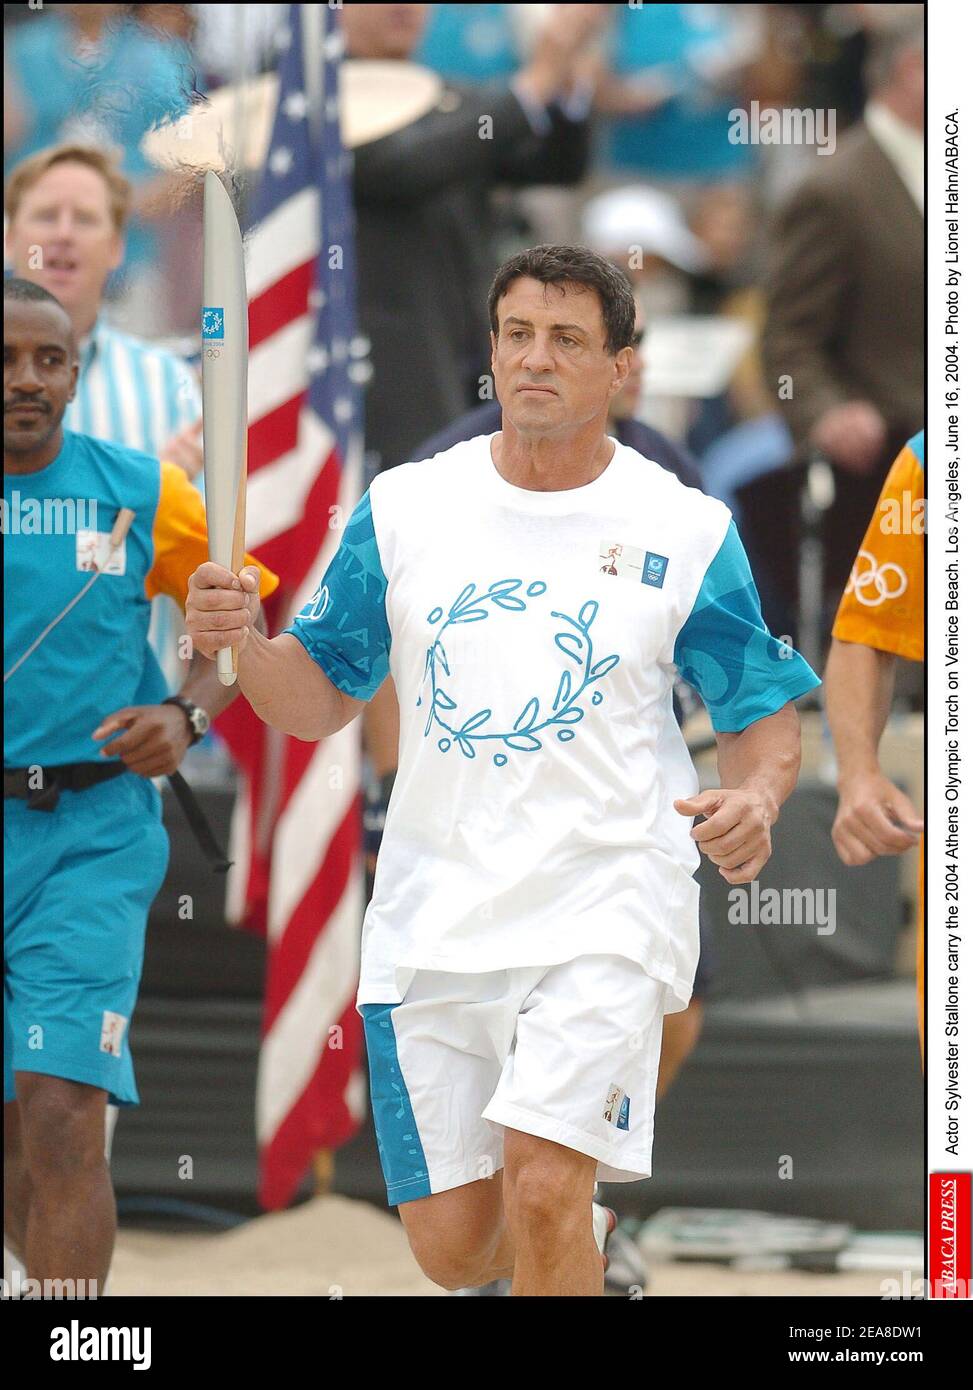 L'attore Sylvester Stallone porta la torcia olimpica di Atene 2004 sulla spiaggia di Venezia. Los Angeles, 16 giugno 2004. Foto di Lionel Hahn/ABACA. Foto Stock